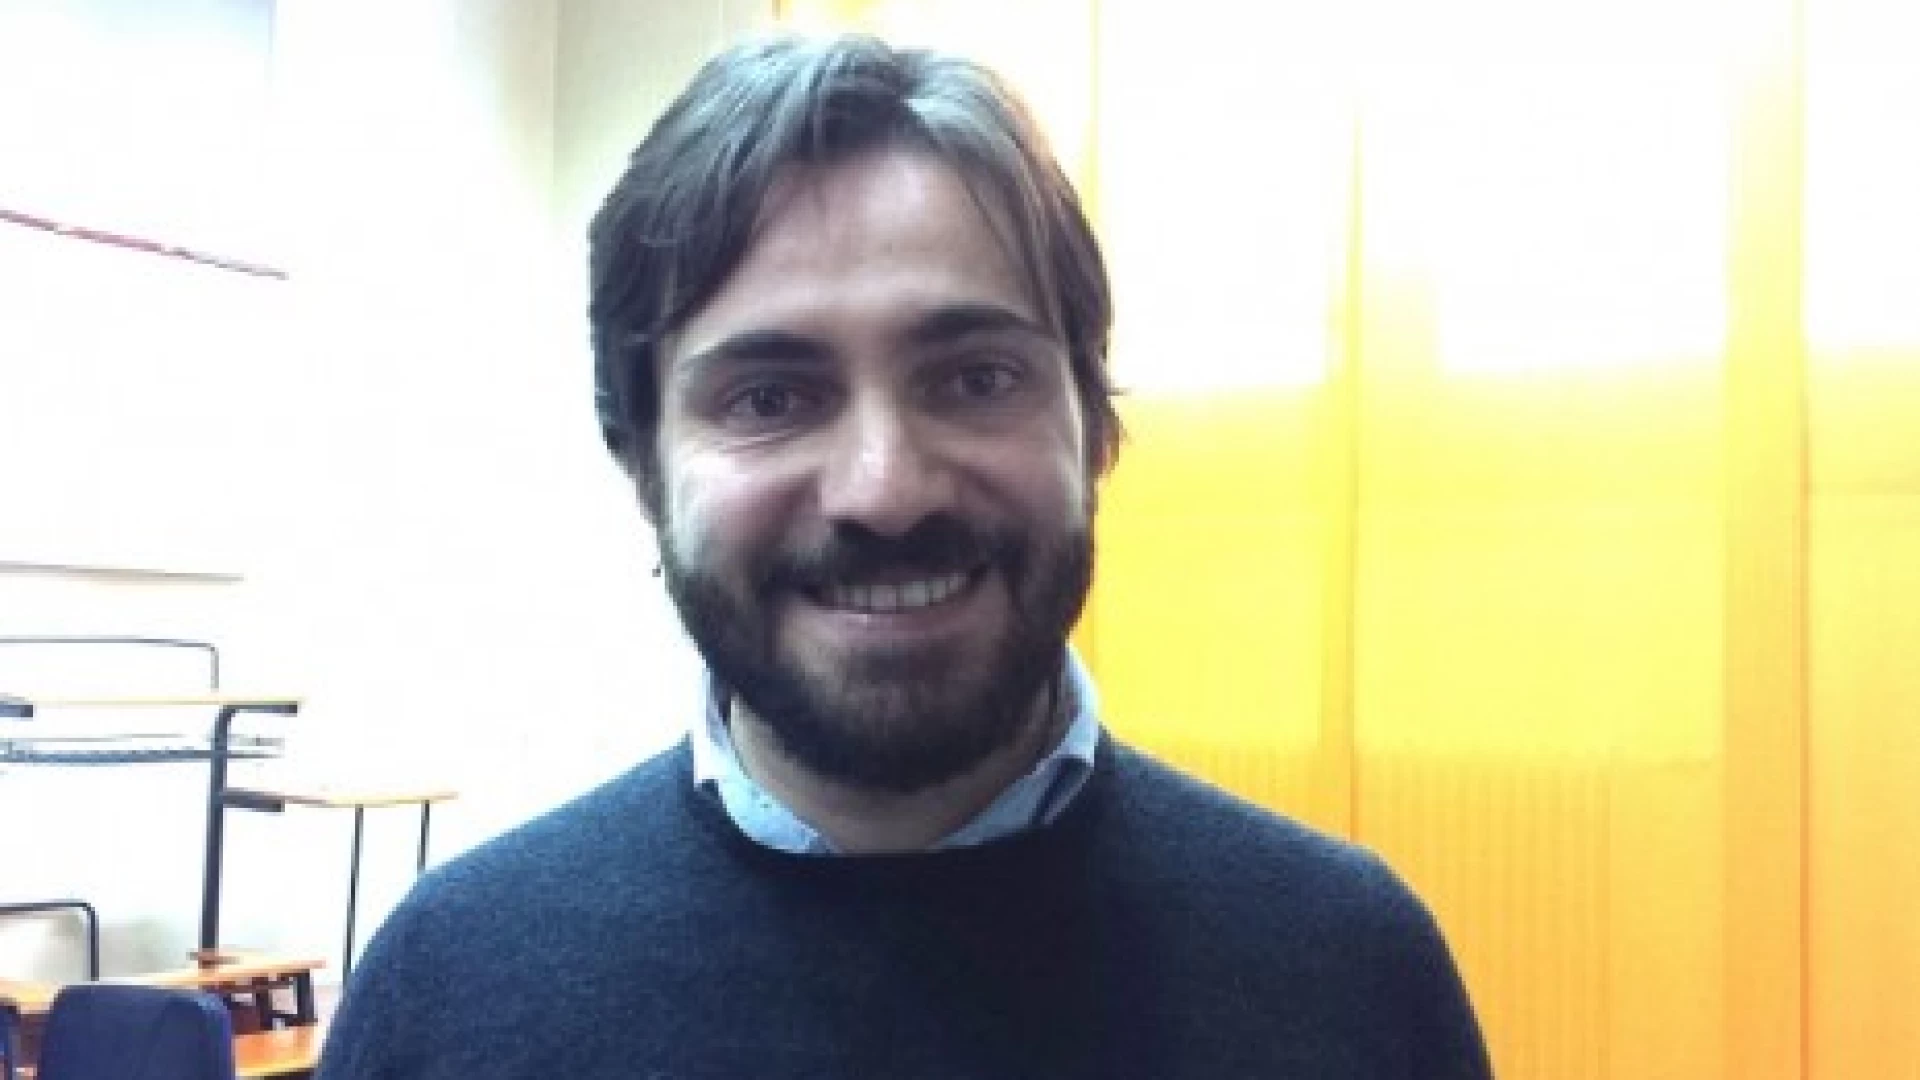 Viabilità, Antonio Federico (M5S): “Pronti i finanziamenti per la realizzazione della variante alla fondovalle Tappino”.